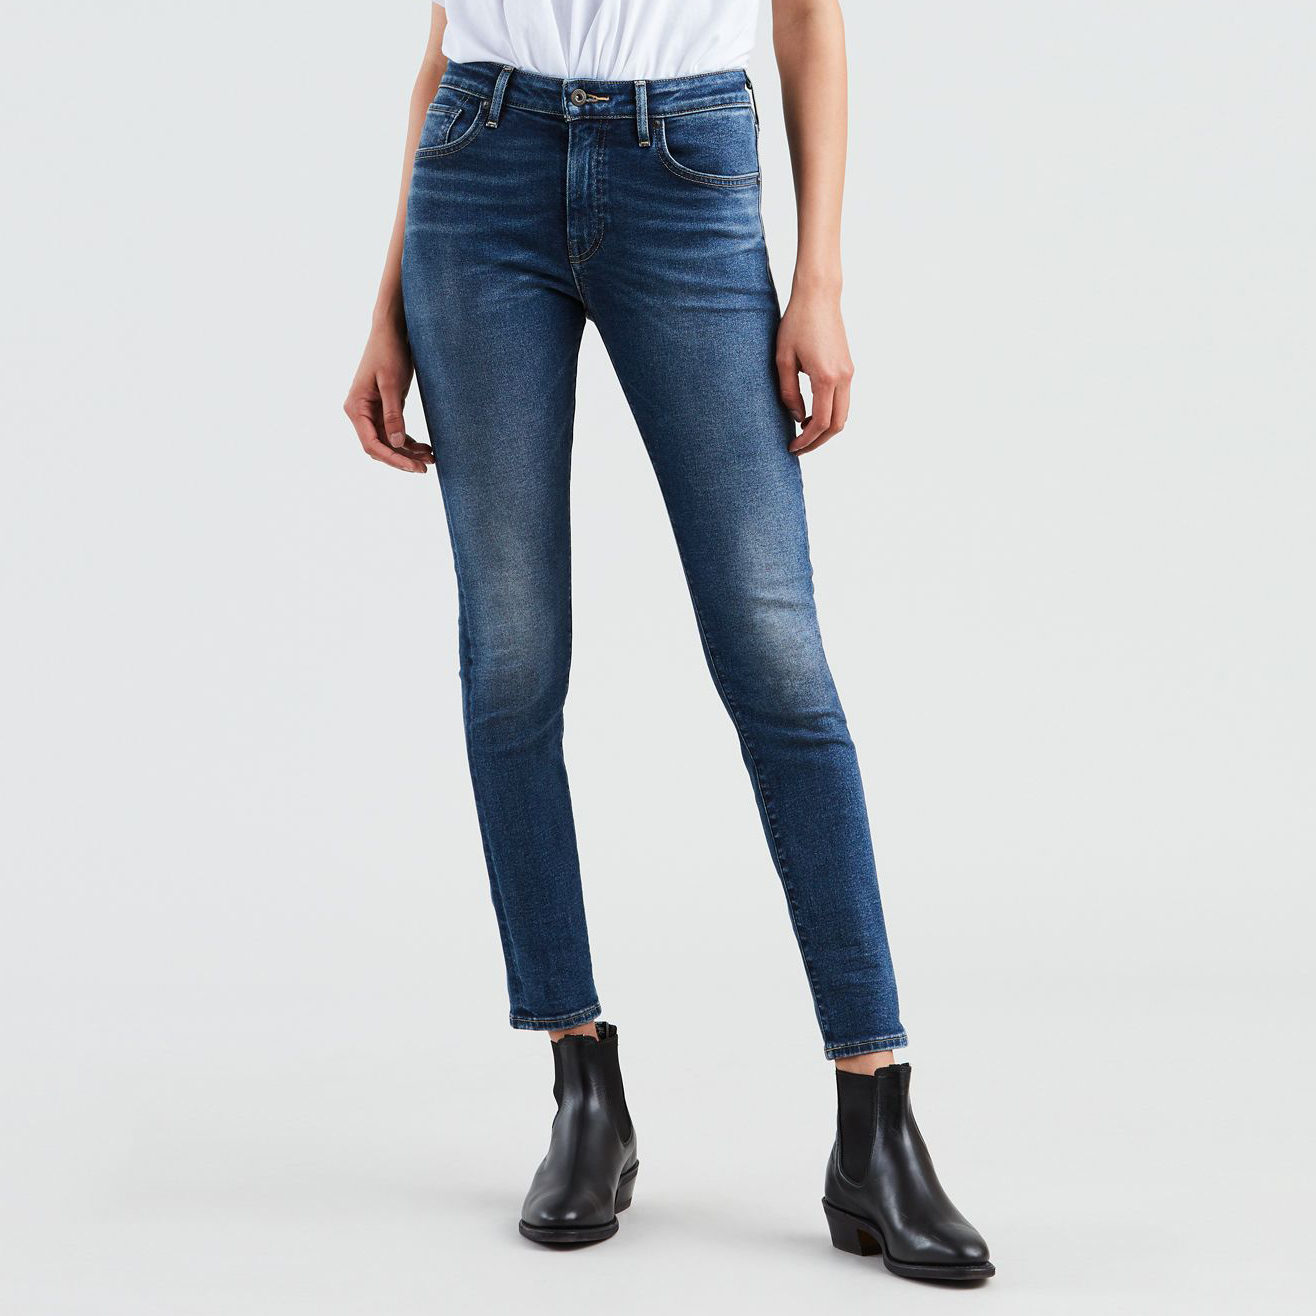 branded jeans sale online